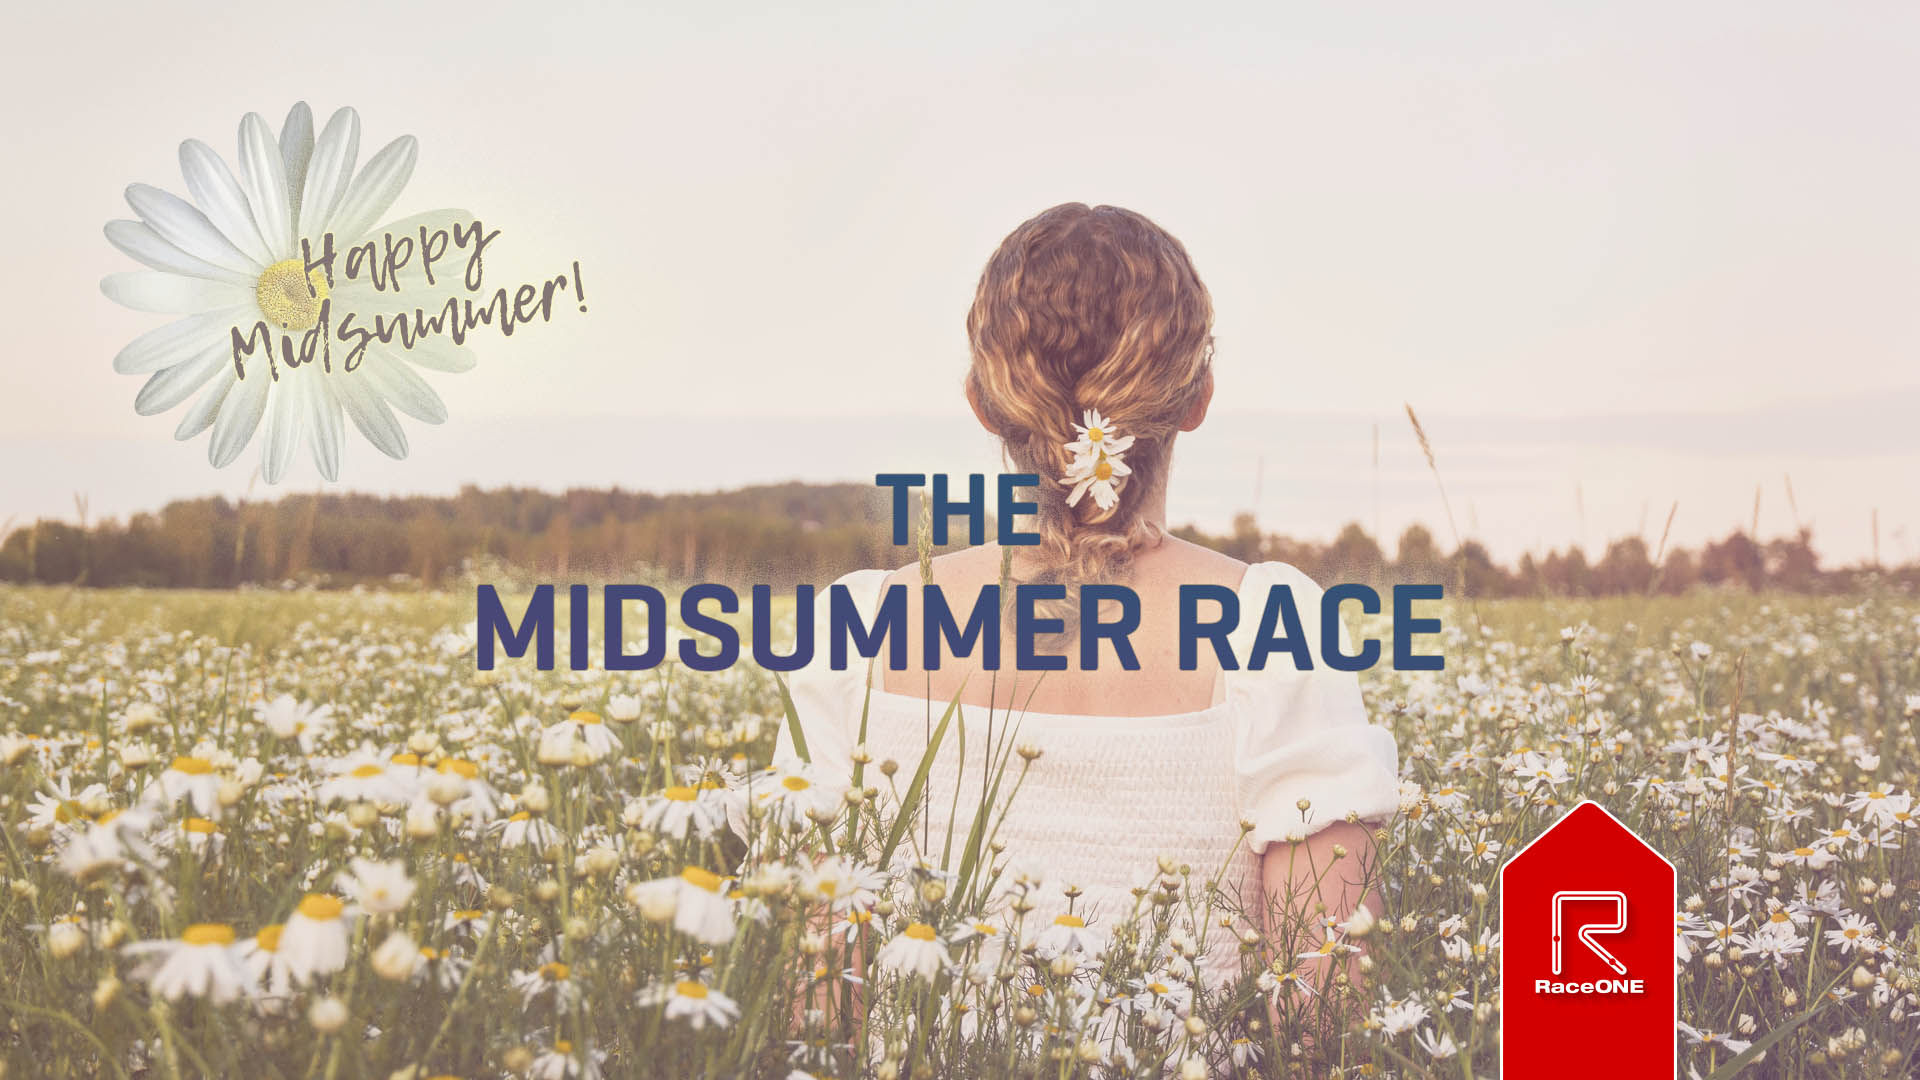 The Midsummer Race